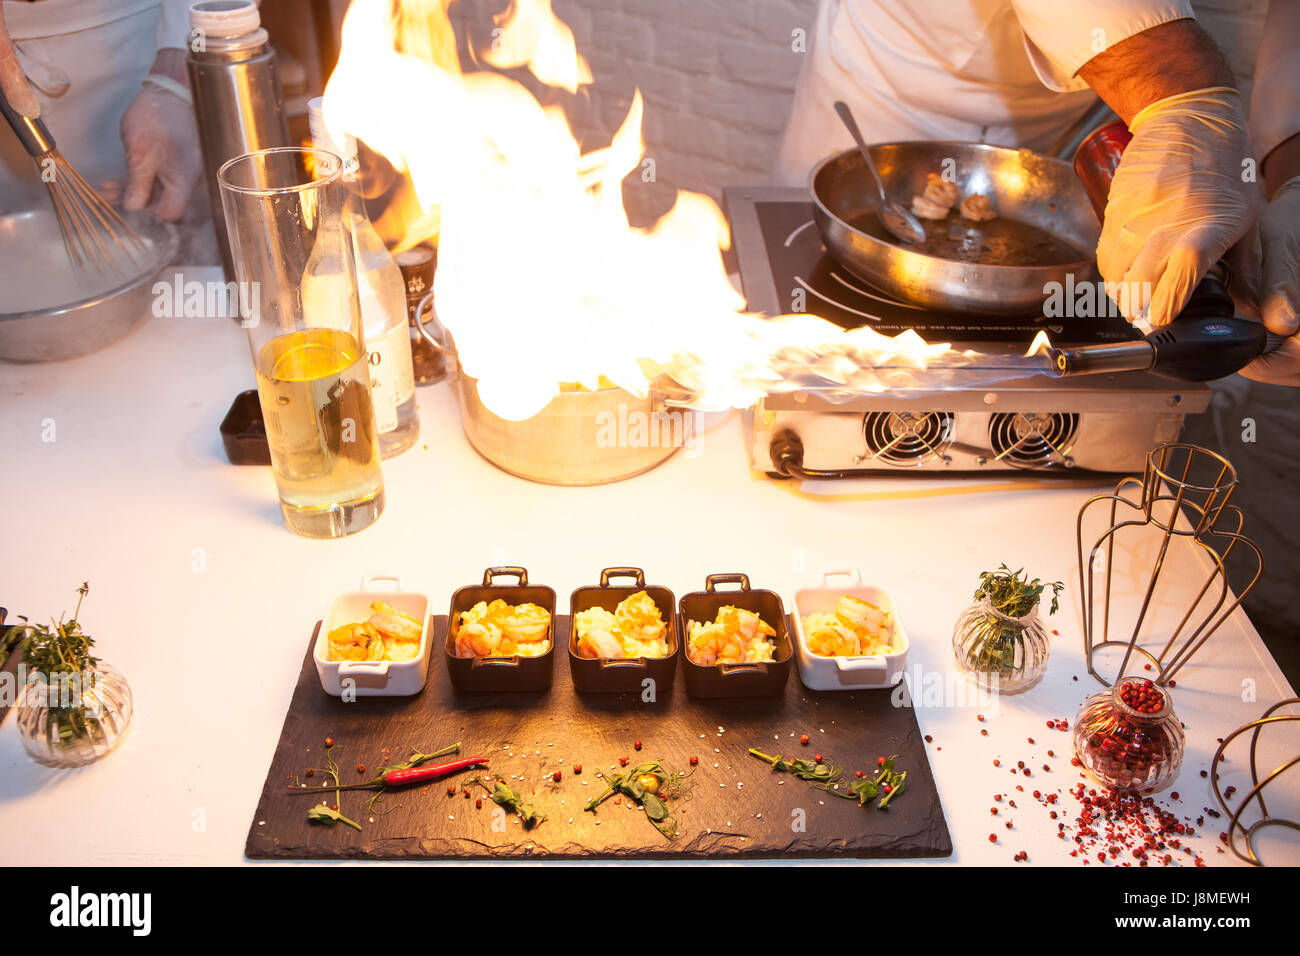 Chef avec le feu dans la cuisinière, émissions culinaires Banque D'Images